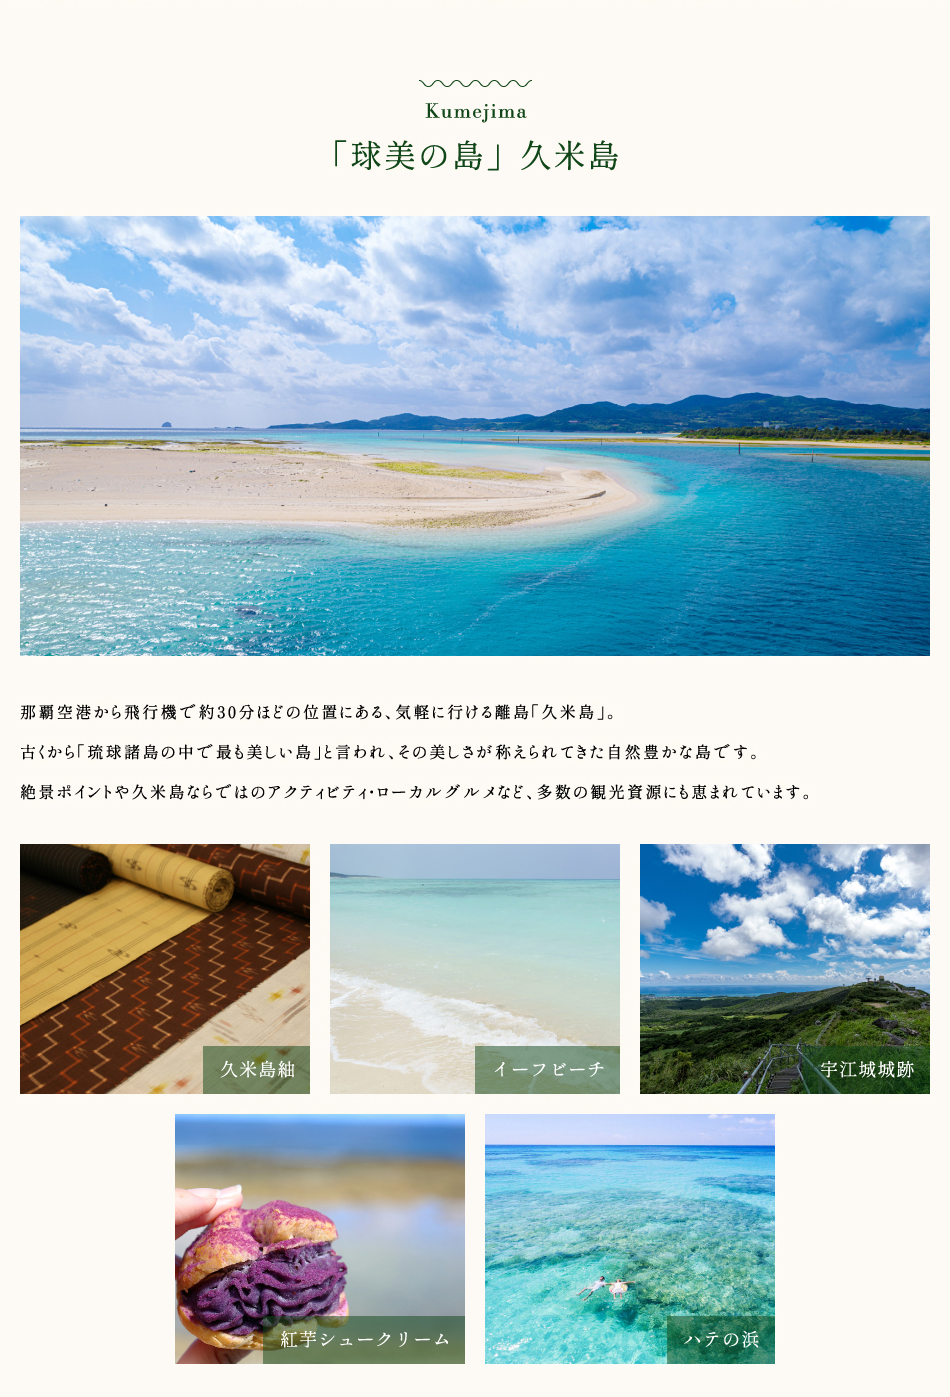 大自然と島人が織りなす「球美の島」久米島